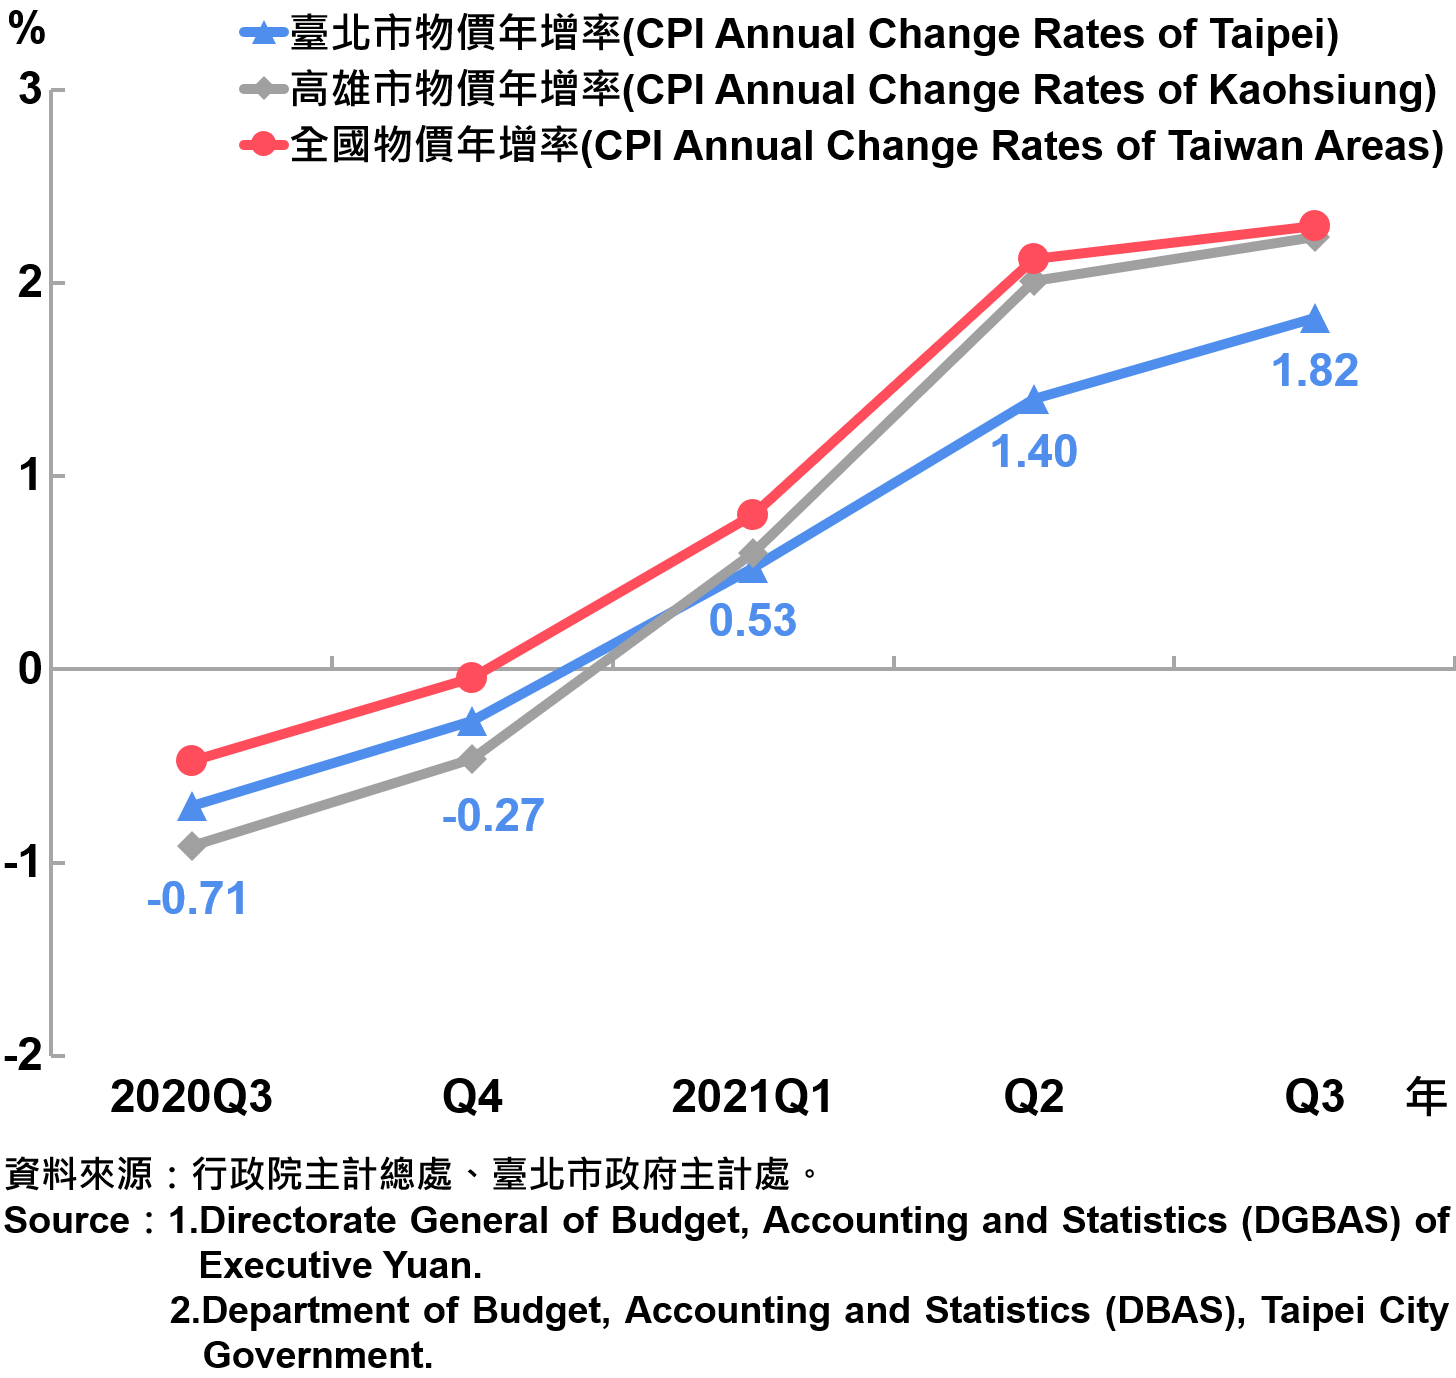 臺北市消費者物價指數（CPI）年增率—20210Q3　The Changes of CPI in Taipei City—2021Q3